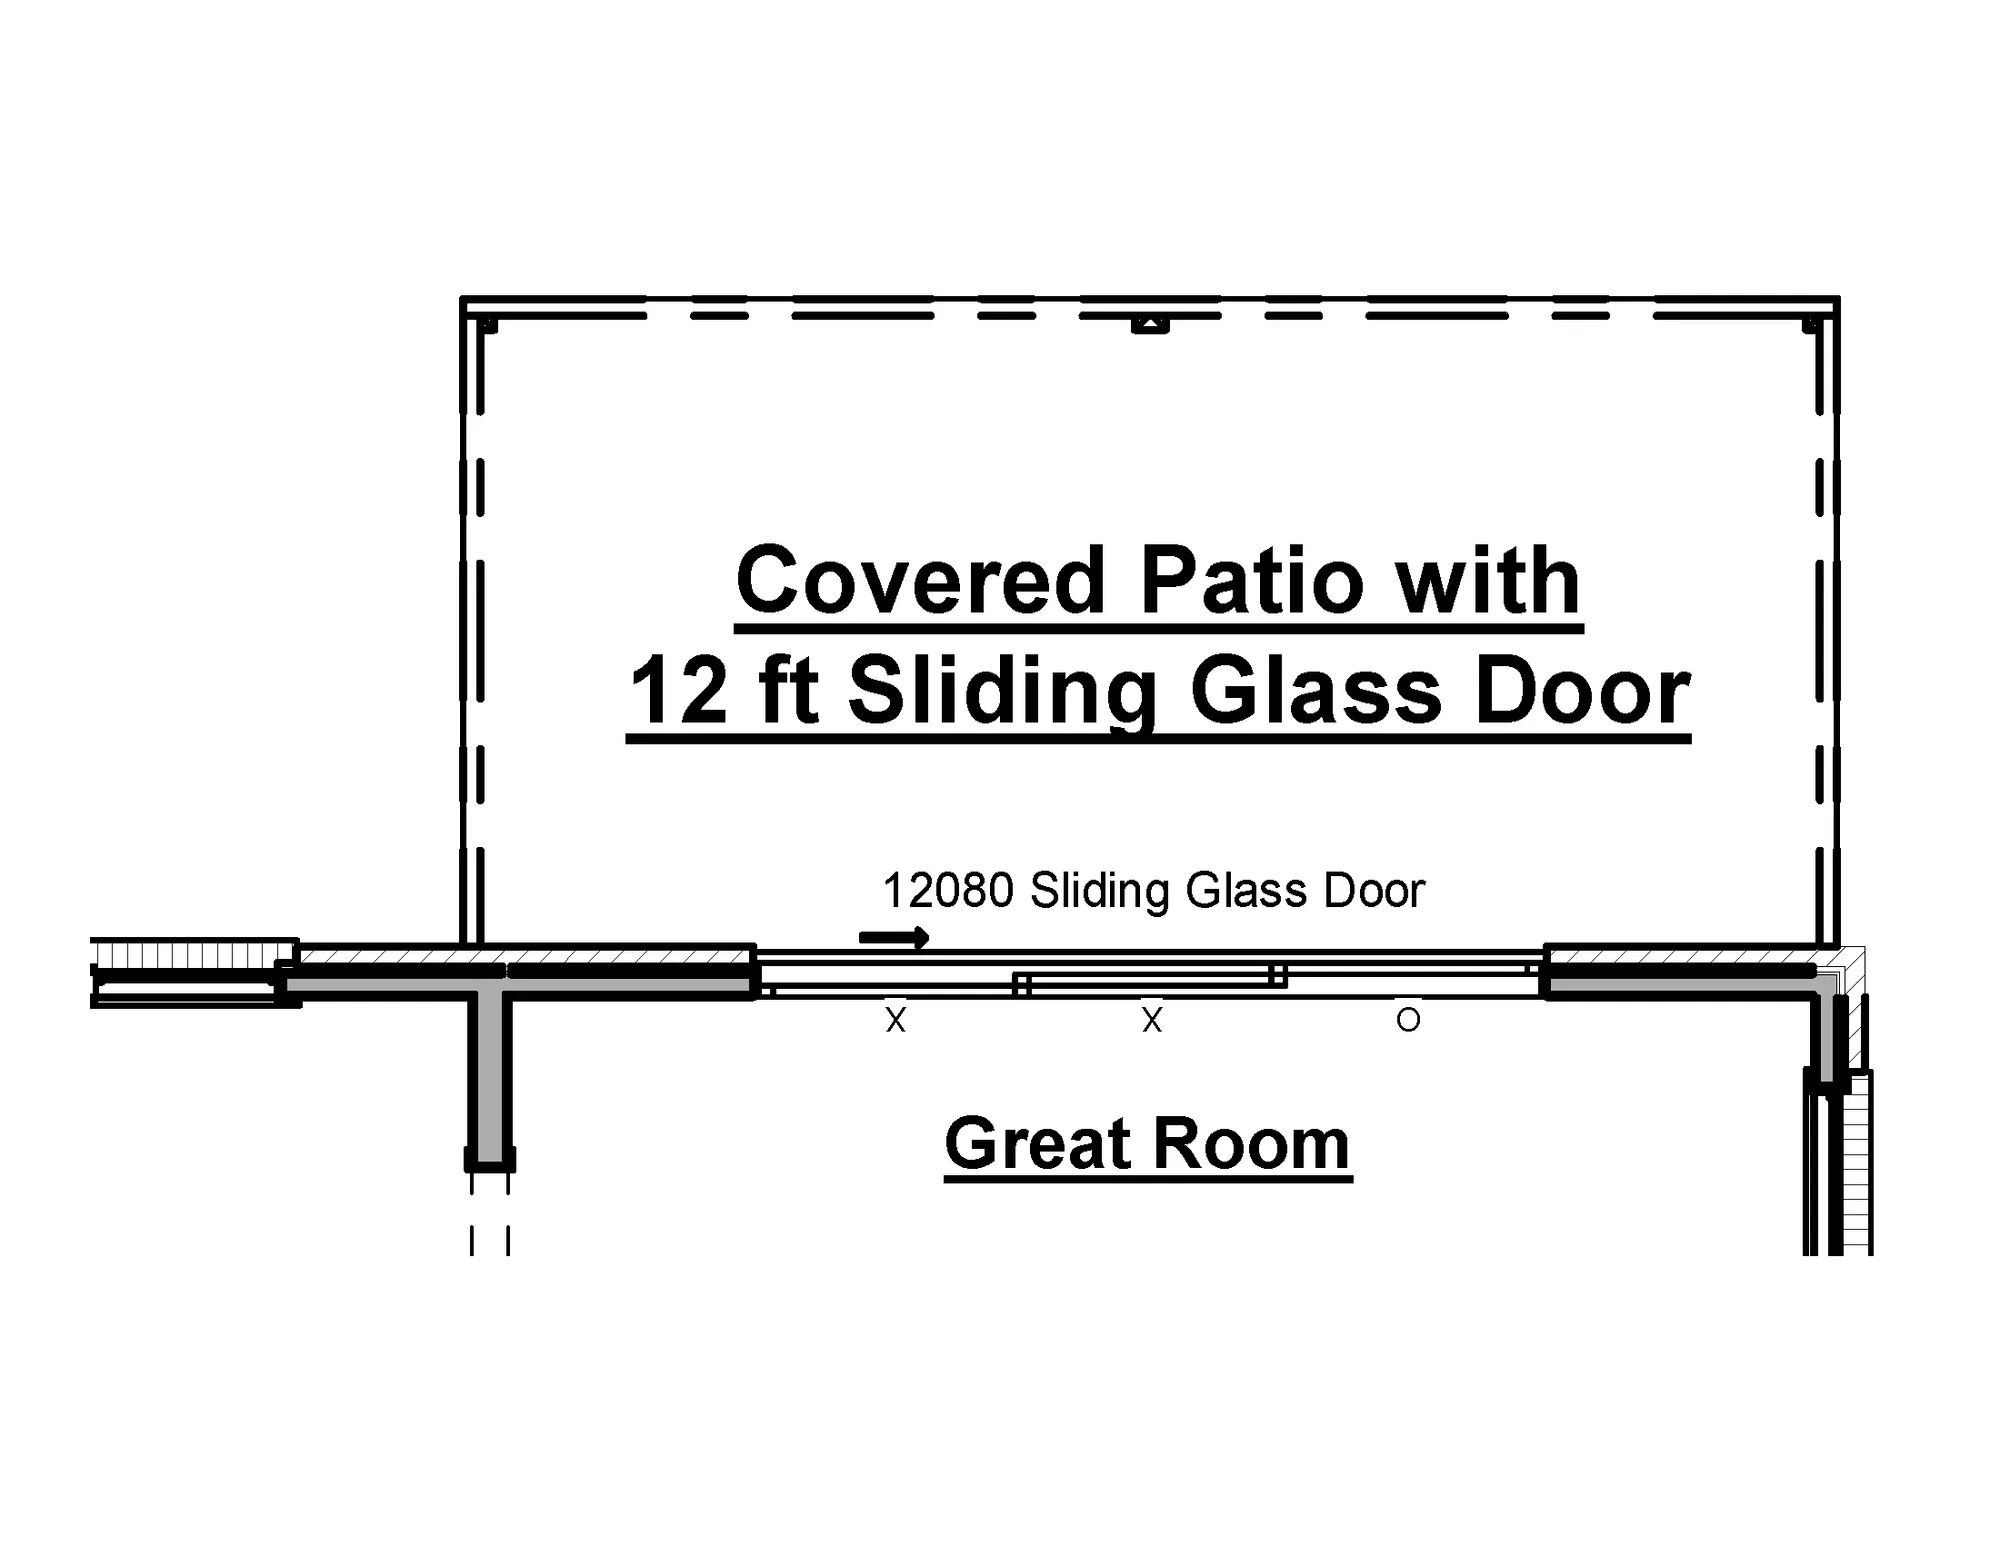 12ft Sliding Glass Door Option - undefined